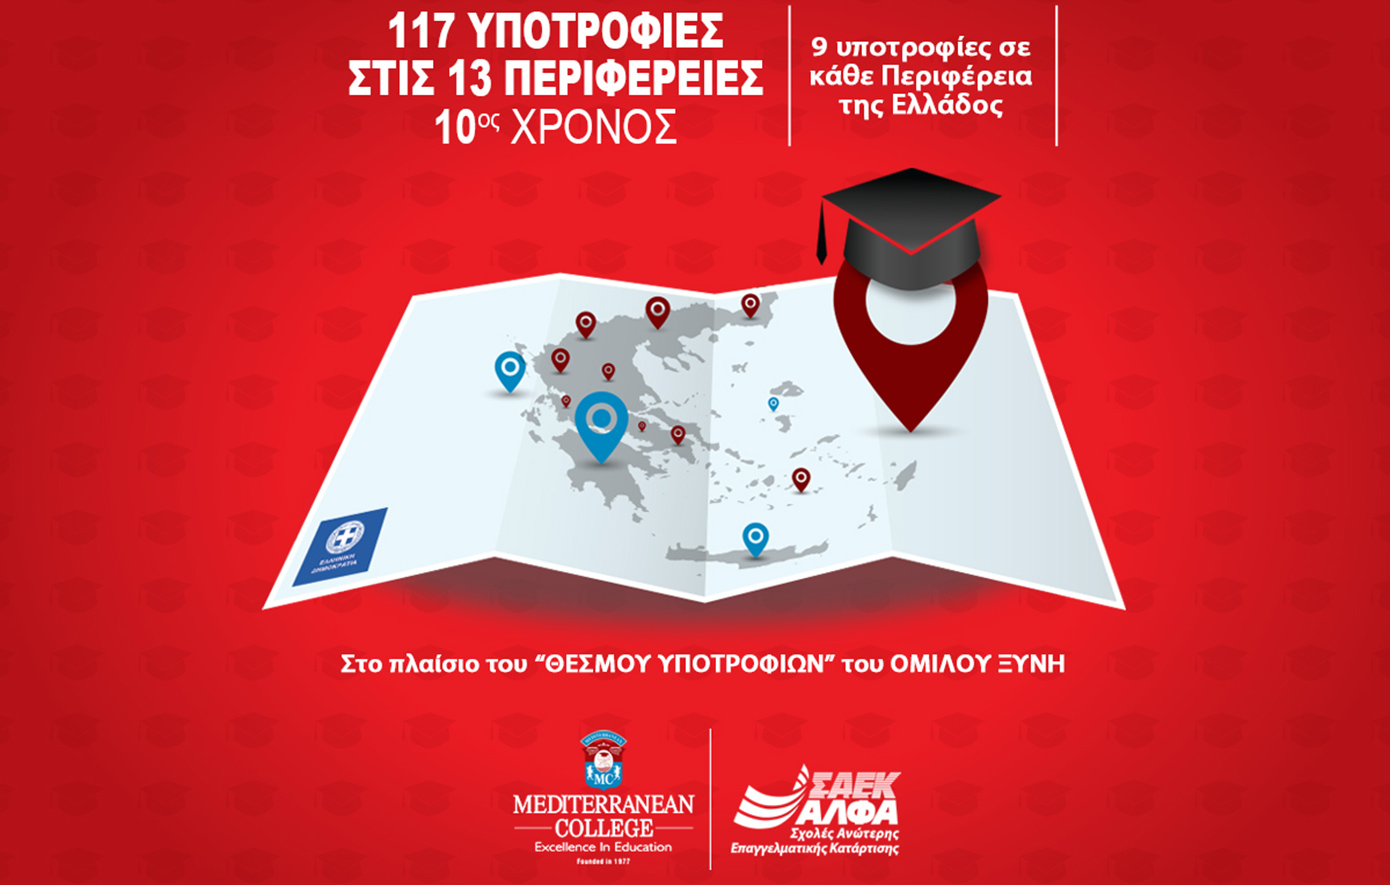 10ος χρόνος για τις 117 Υποτροφίες Σπουδών στις Περιφέρειες της Ελλάδας από το Mediterranean College &amp; τις Ανώτερες Σχολές ΑΛΦΑ